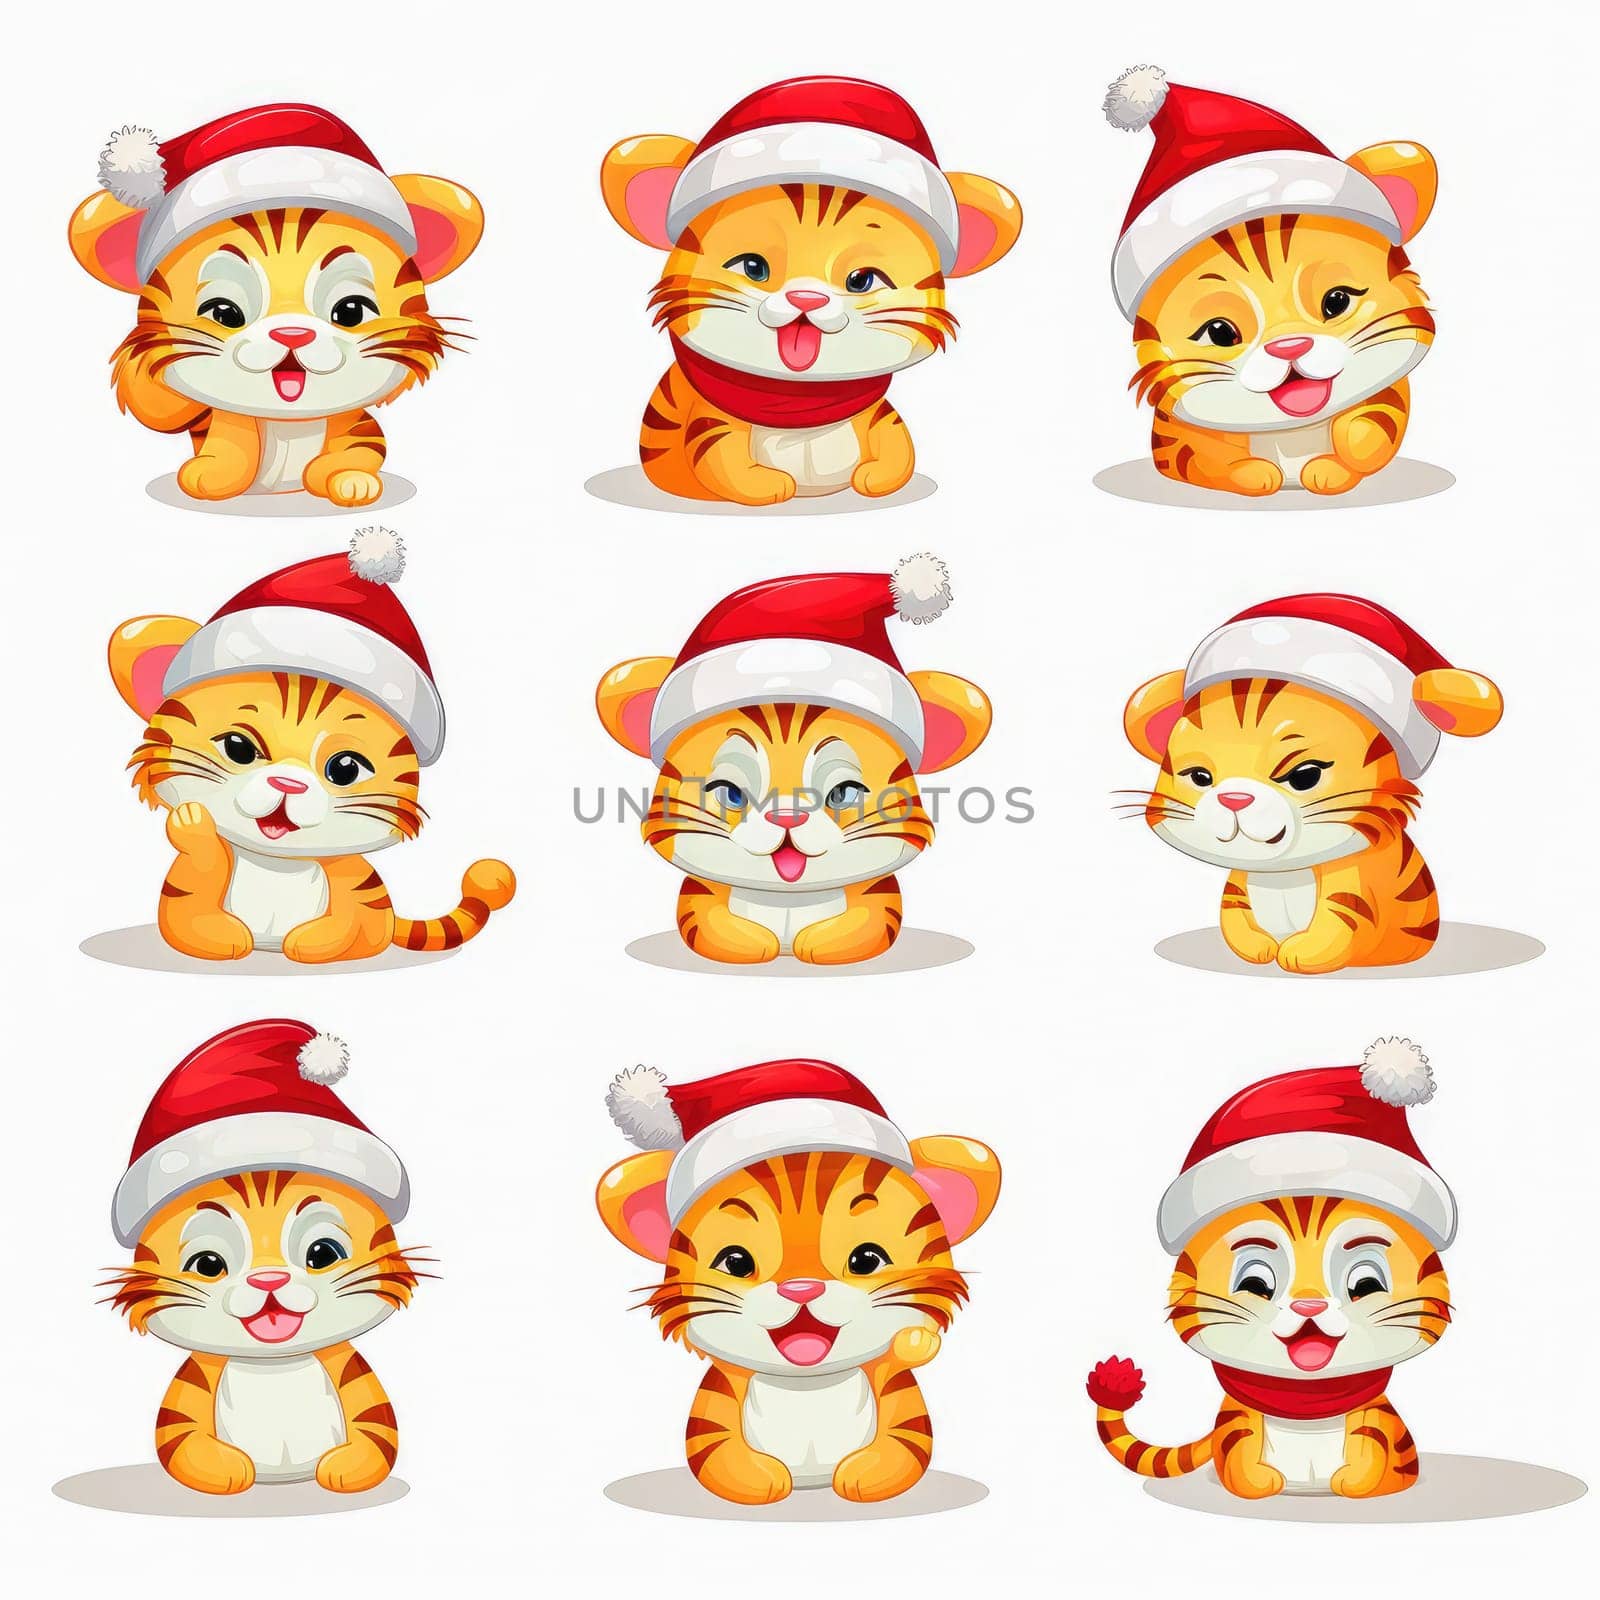 New year emoji funny tiger cub. Cartoon style, New Year, Christmas